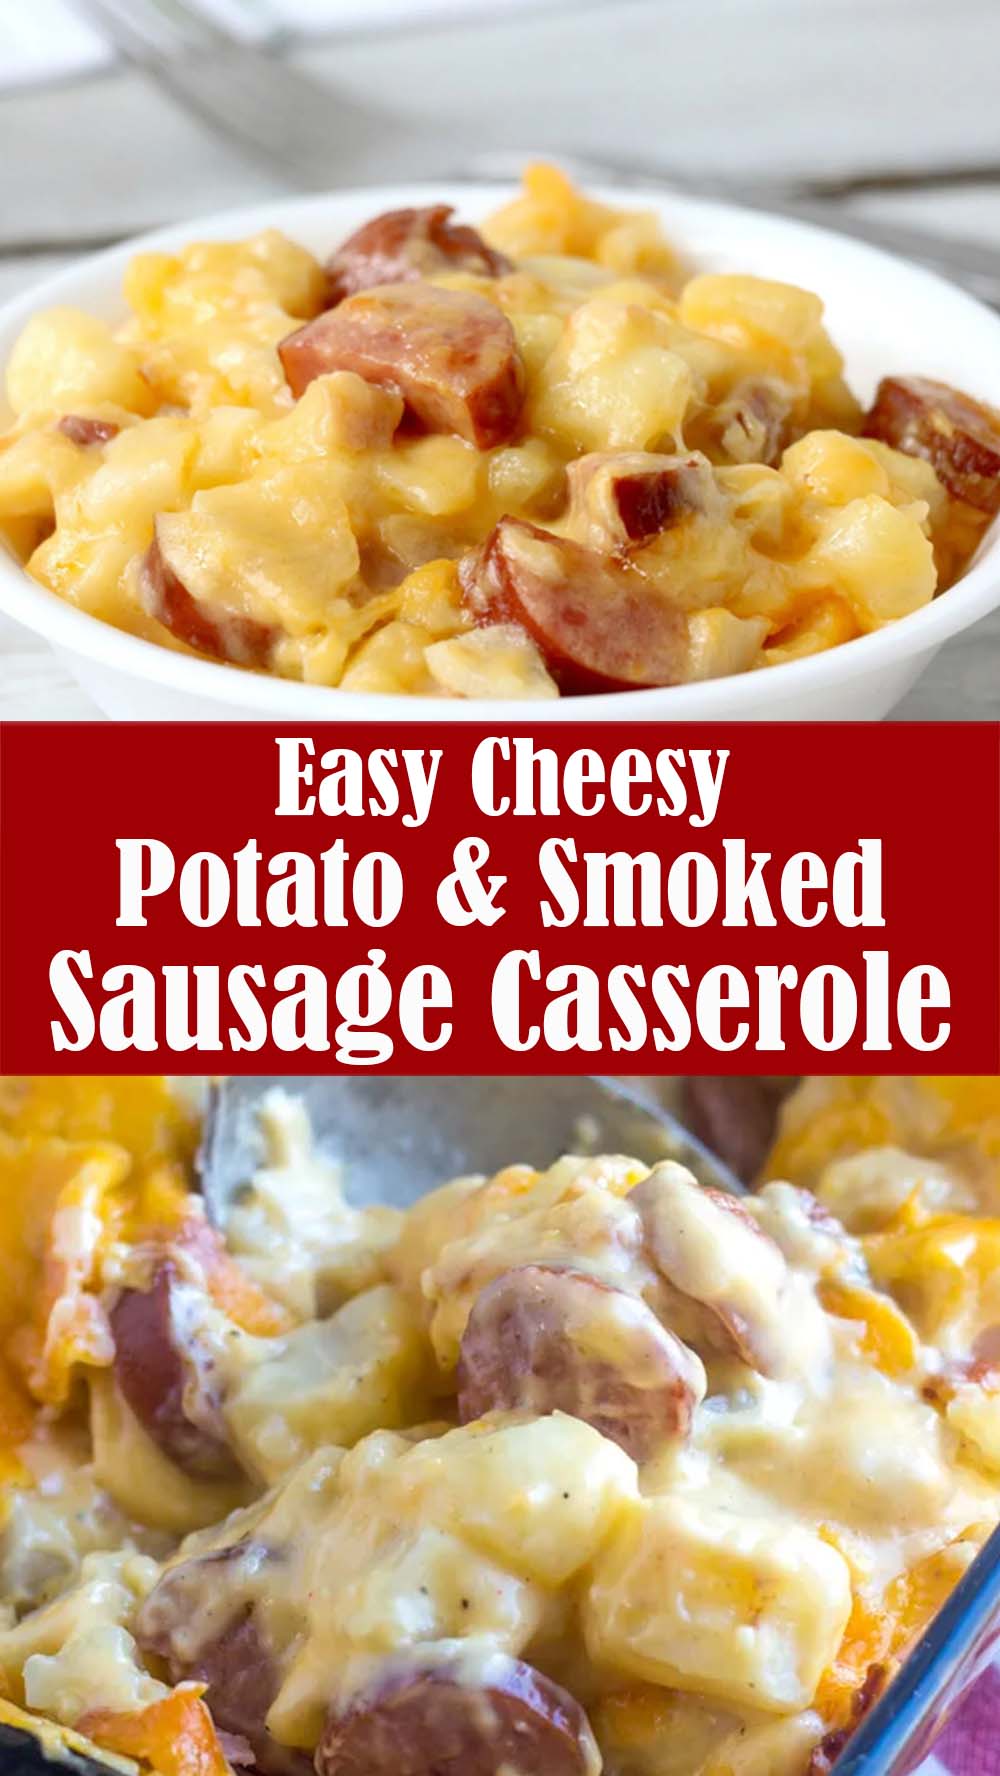 Easy Cheesy Potato & Smoked Sausage Casserole